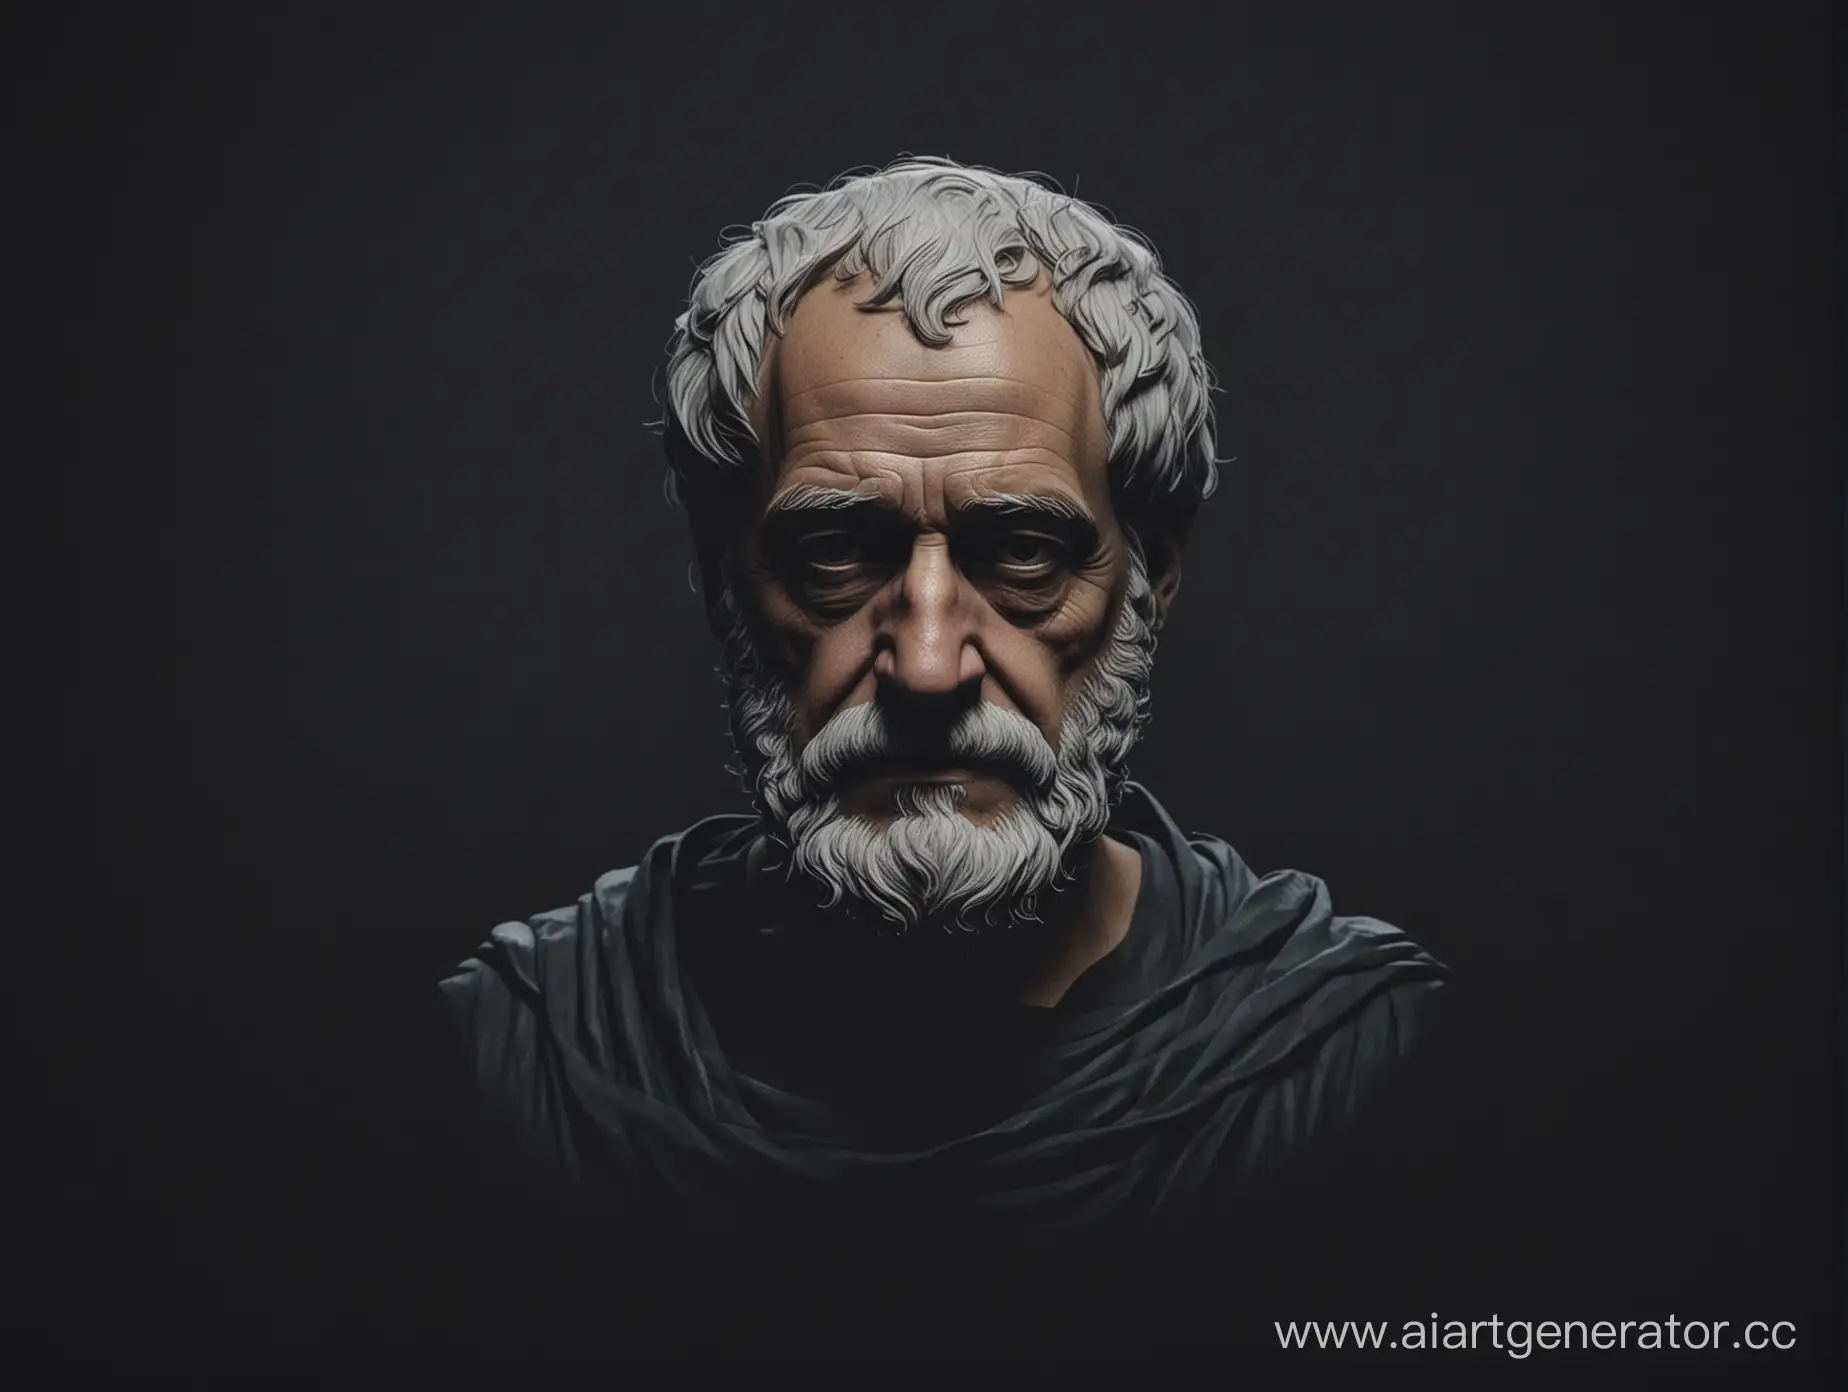 Aristotle-Portrait-in-Minimalist-Style-on-Dark-Background-in-4K-Resolution